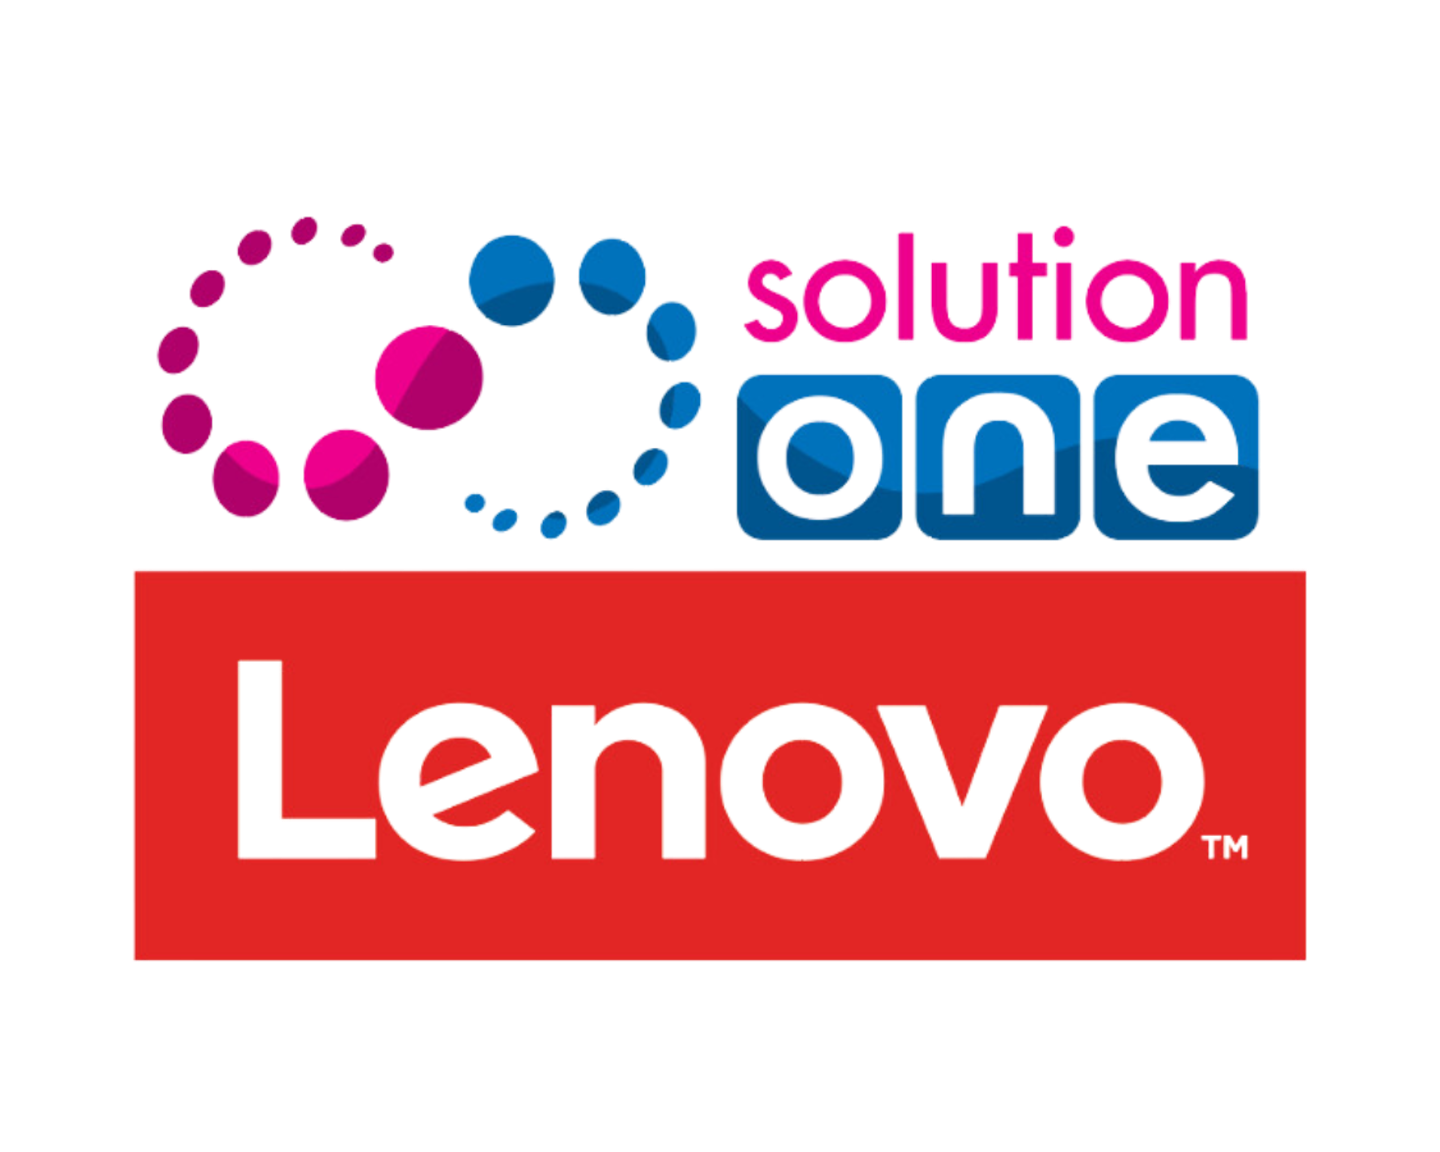 Solution One & Lenovo logo